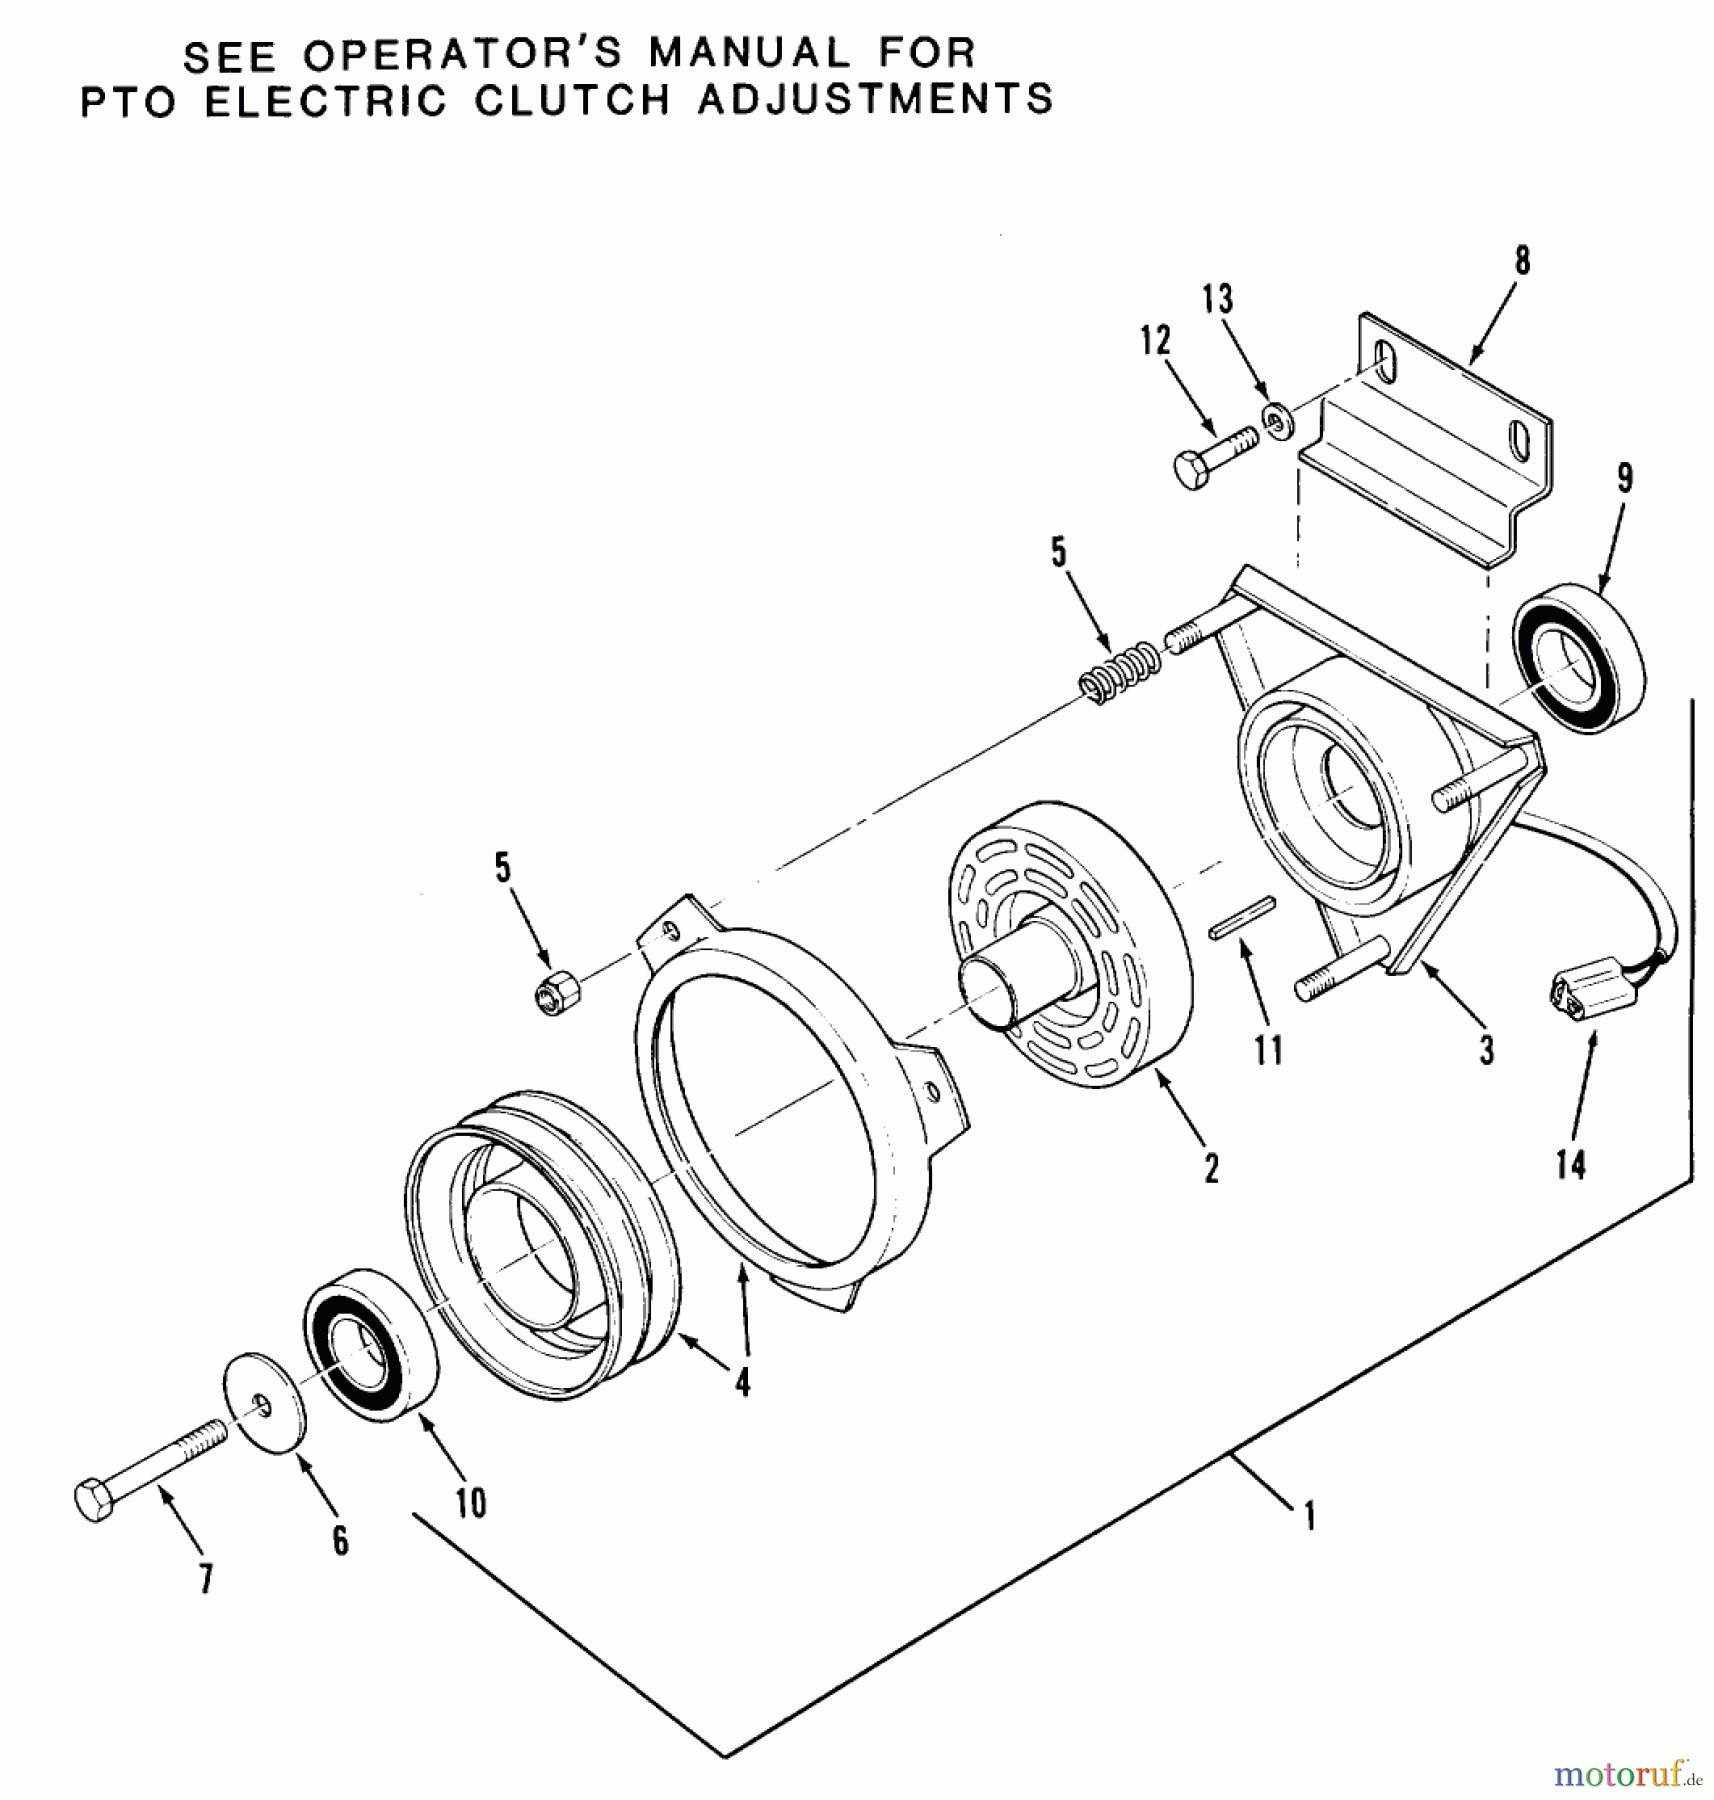  Toro Neu Mowers, Zero-Turn Z1-24OE02 (724-Z) - Toro 724-Z Tractor, 1989 SECTION 7-PTO ELECTRIC CLUTCH